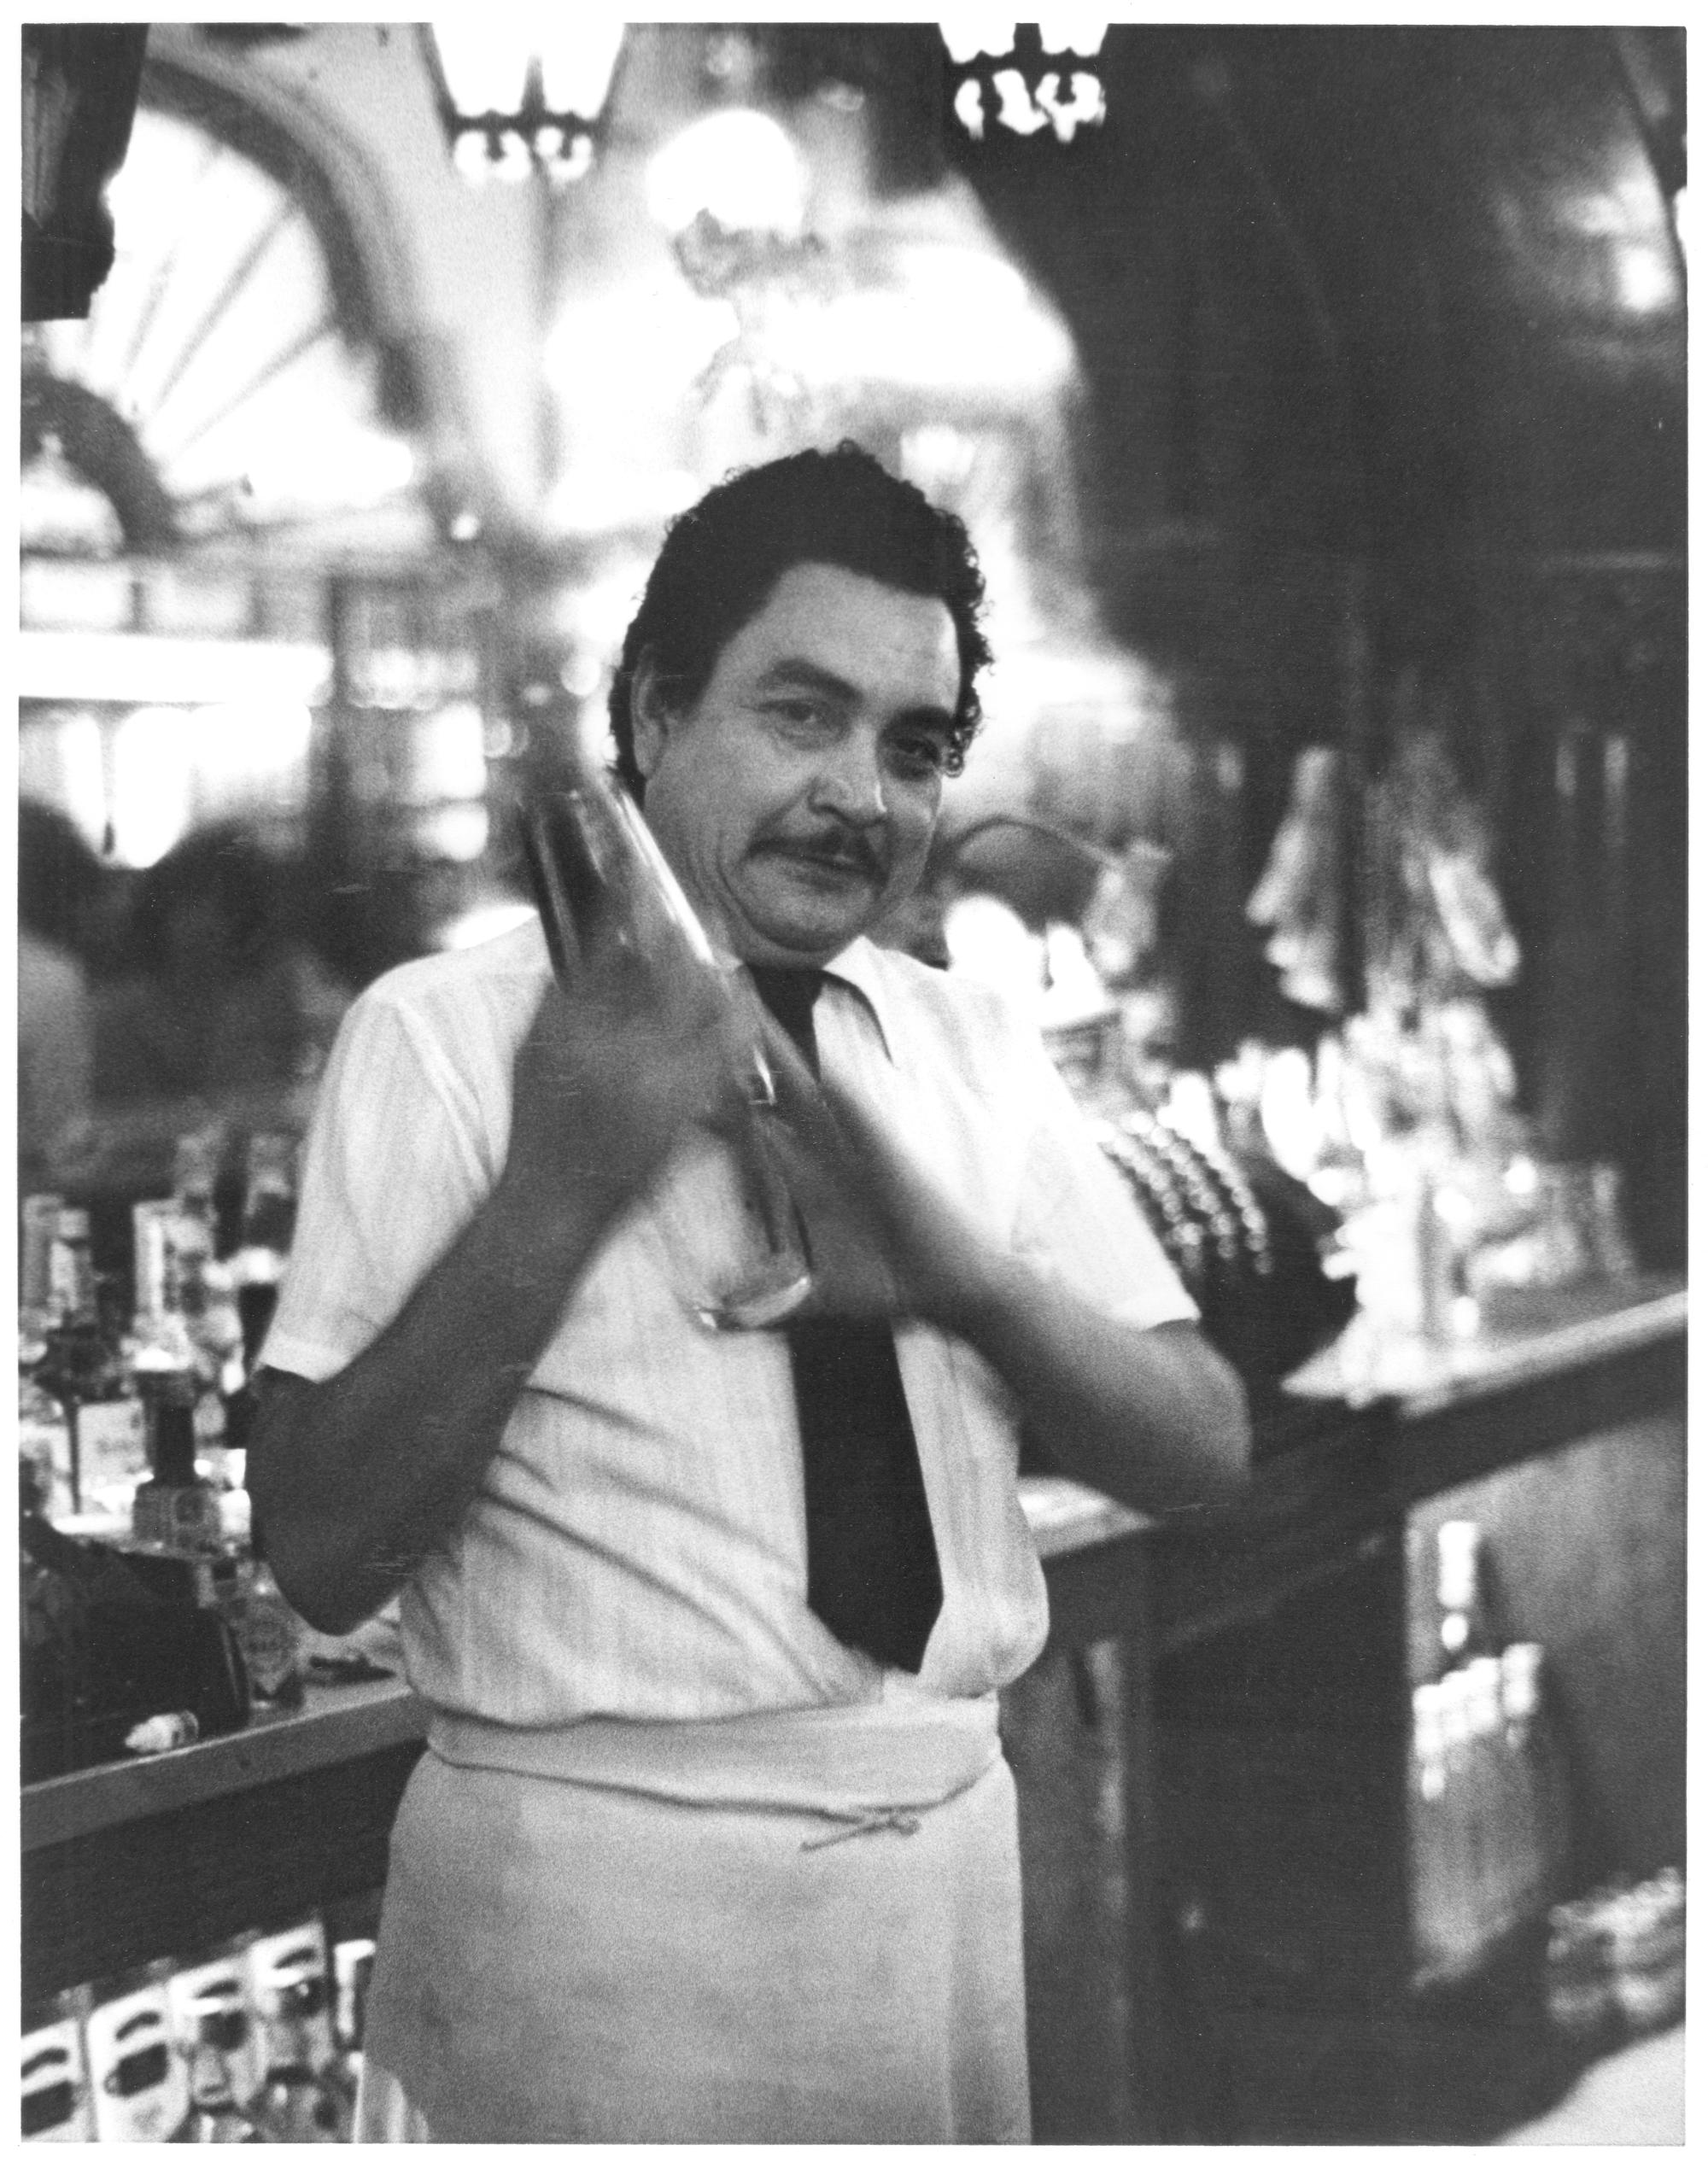 Classwork (Black & White) - Juarez Bartender